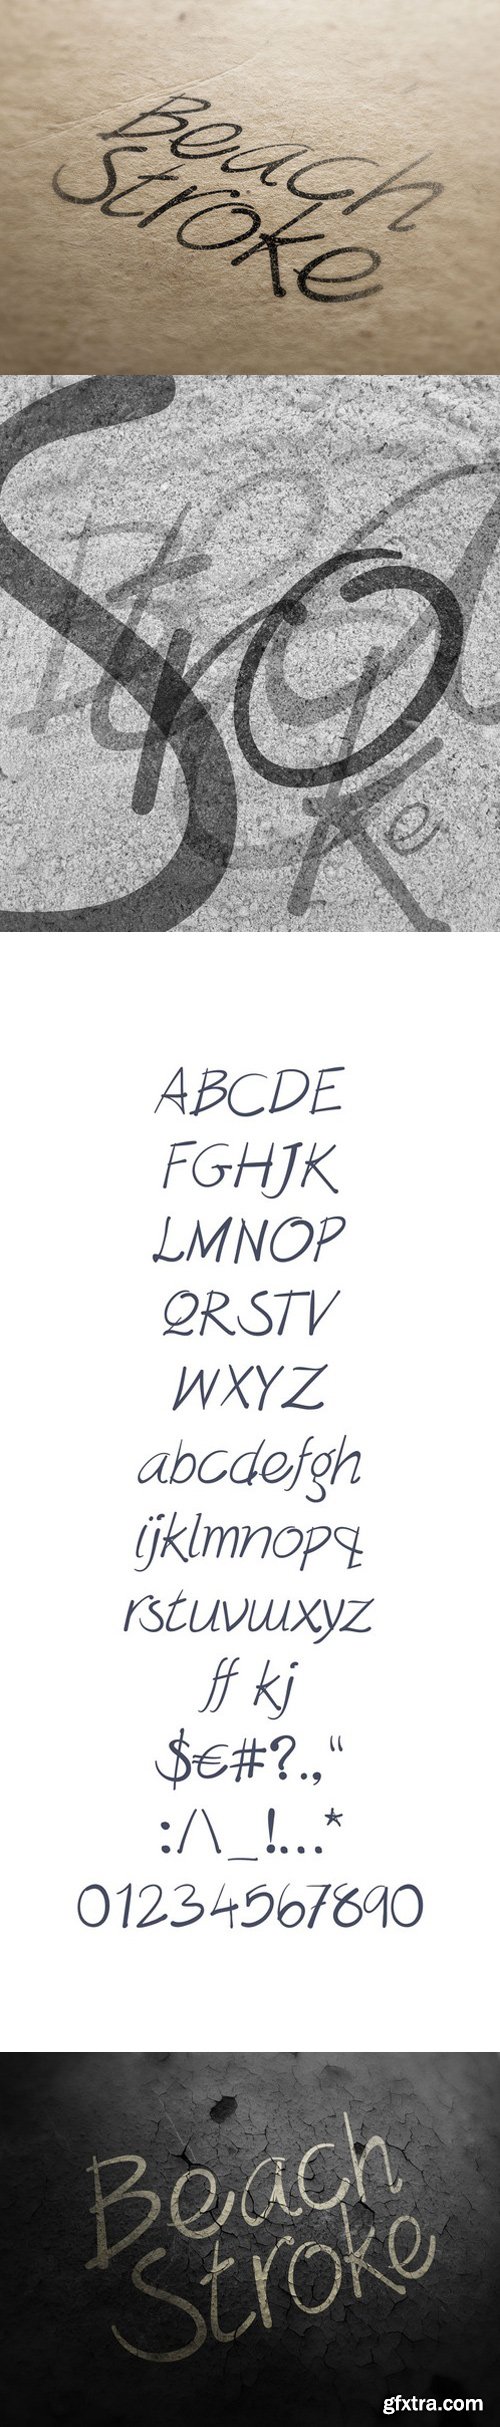 BeachStroke Font, New hand written typeface design